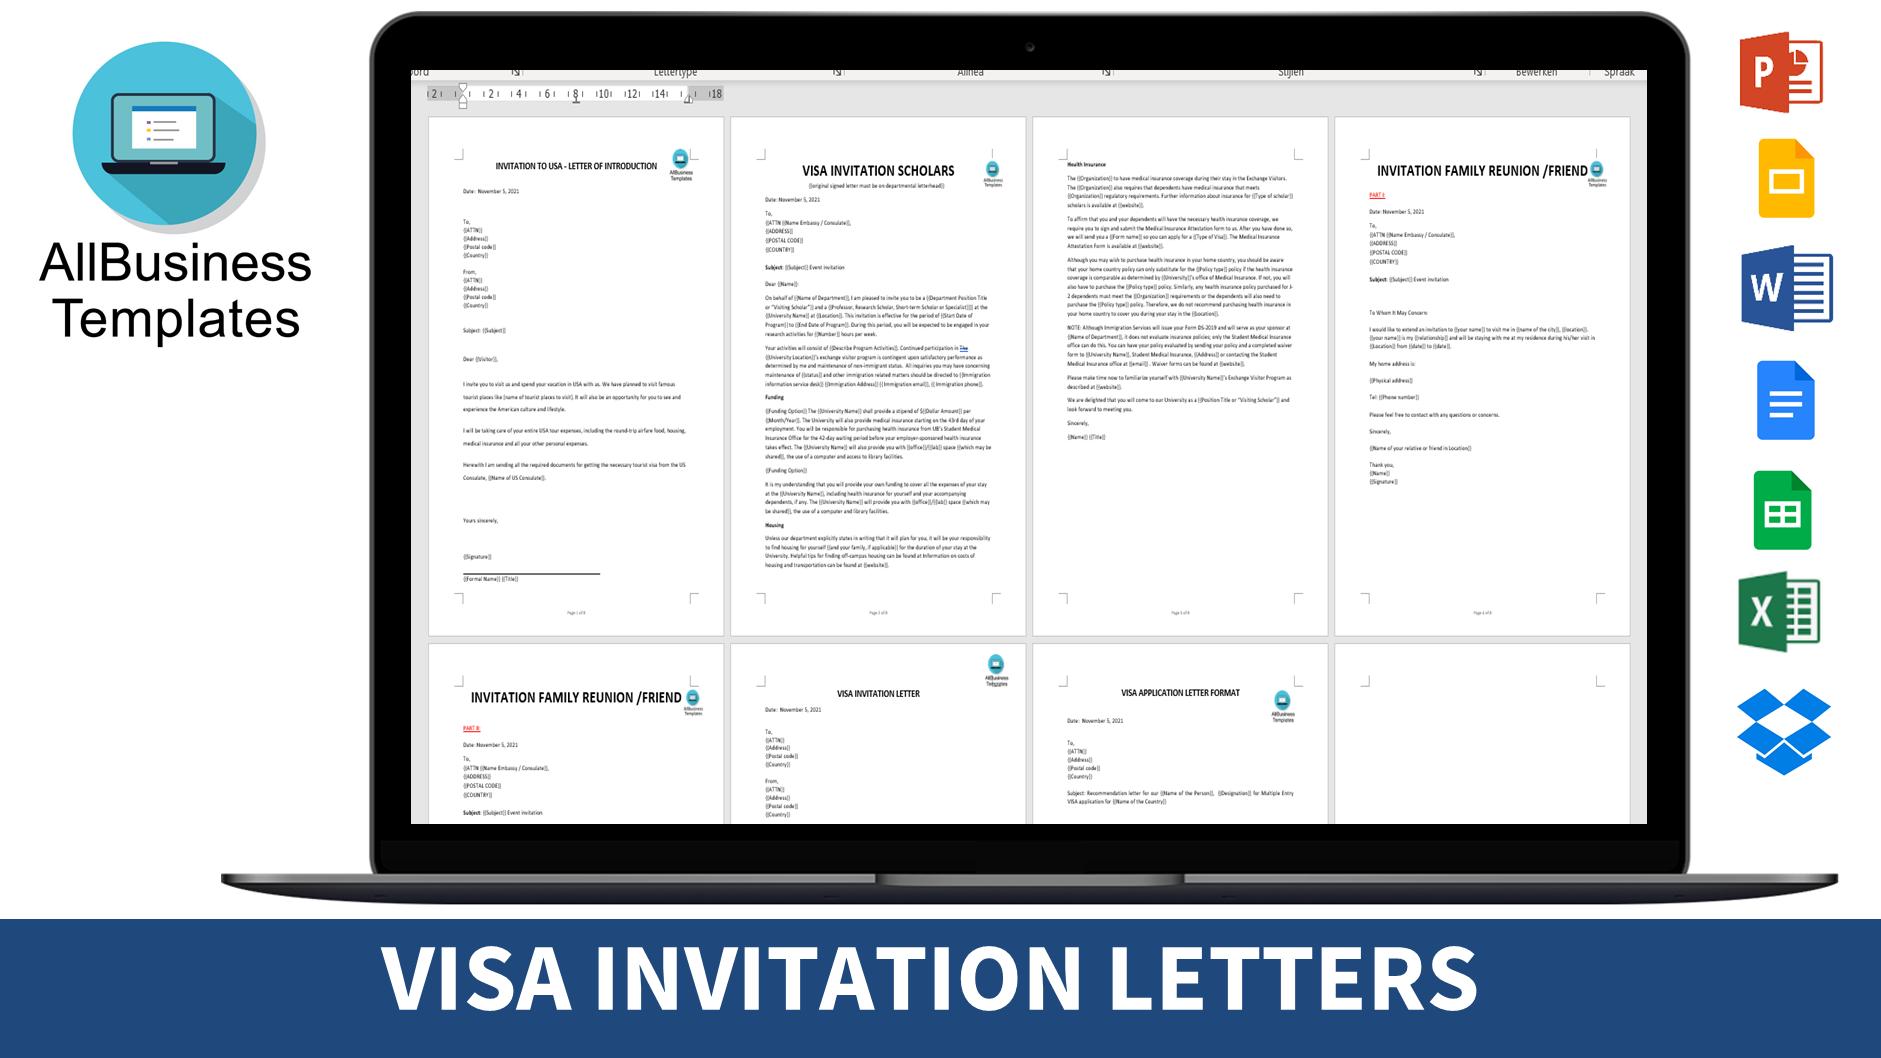 Visa invitation letters main image